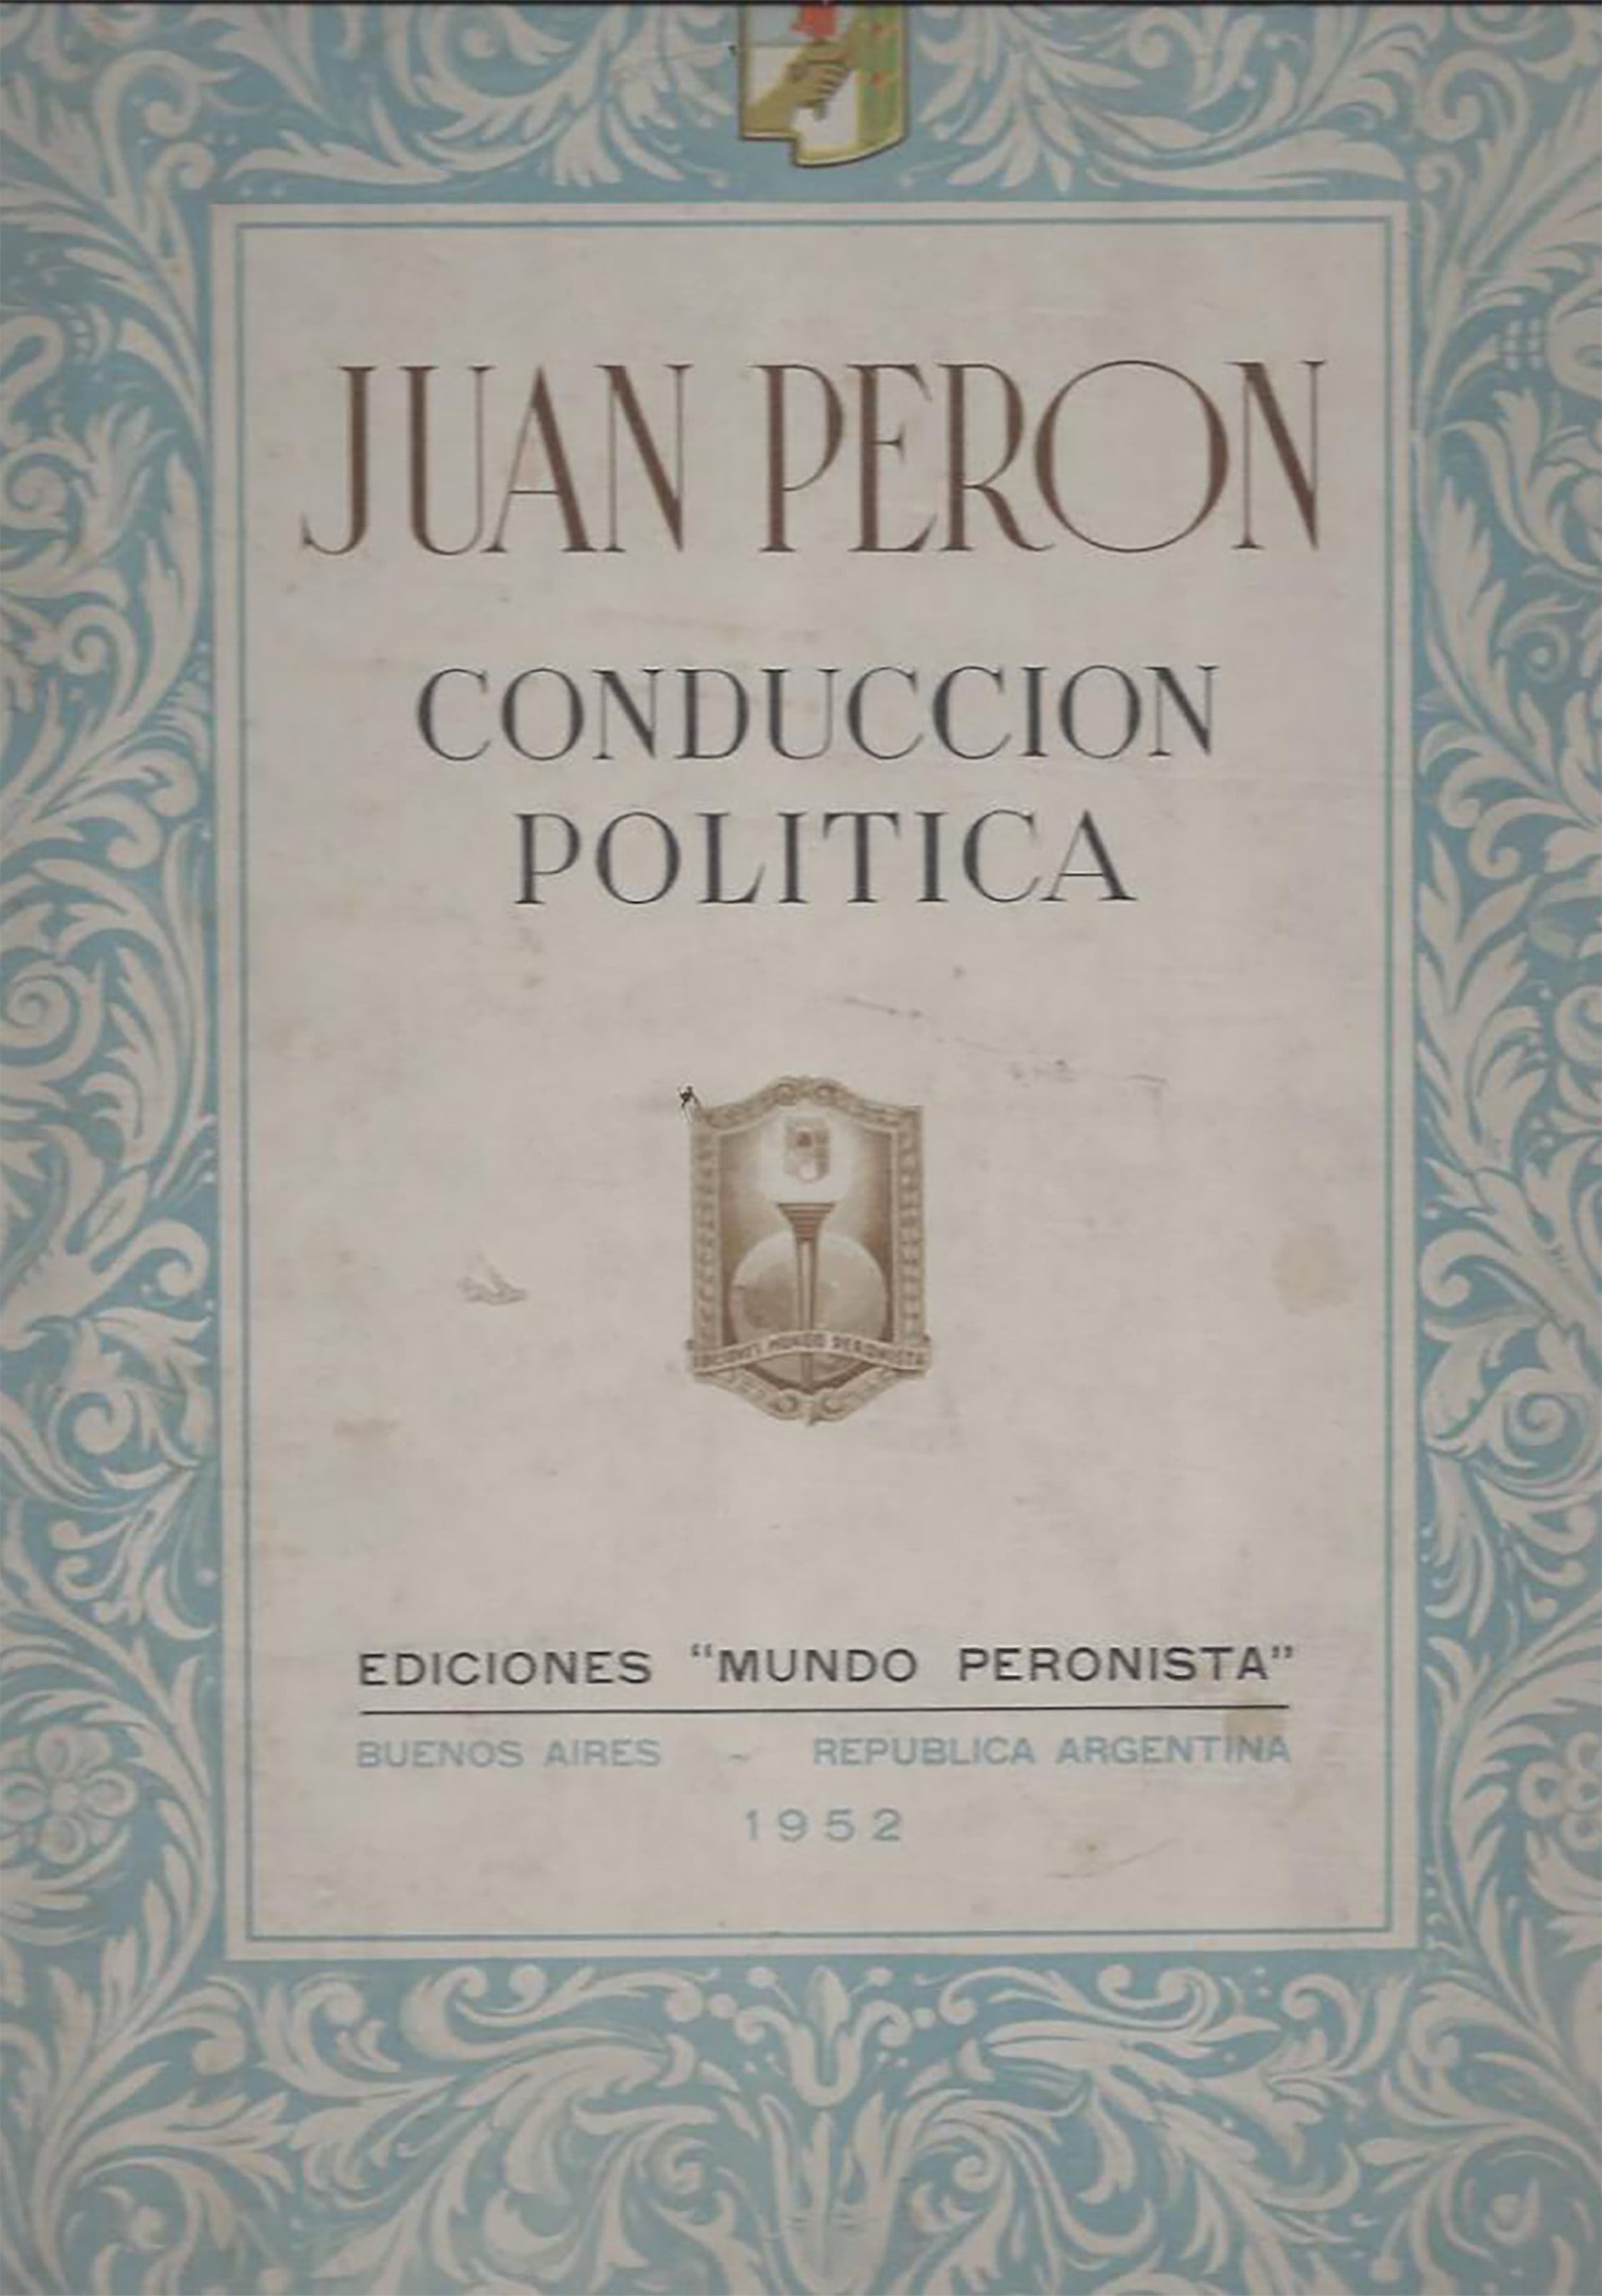 El manual de Conducción Política que recopila las clases que Perón dictó durante su primera presidencia en la Escuela Superior Peronista